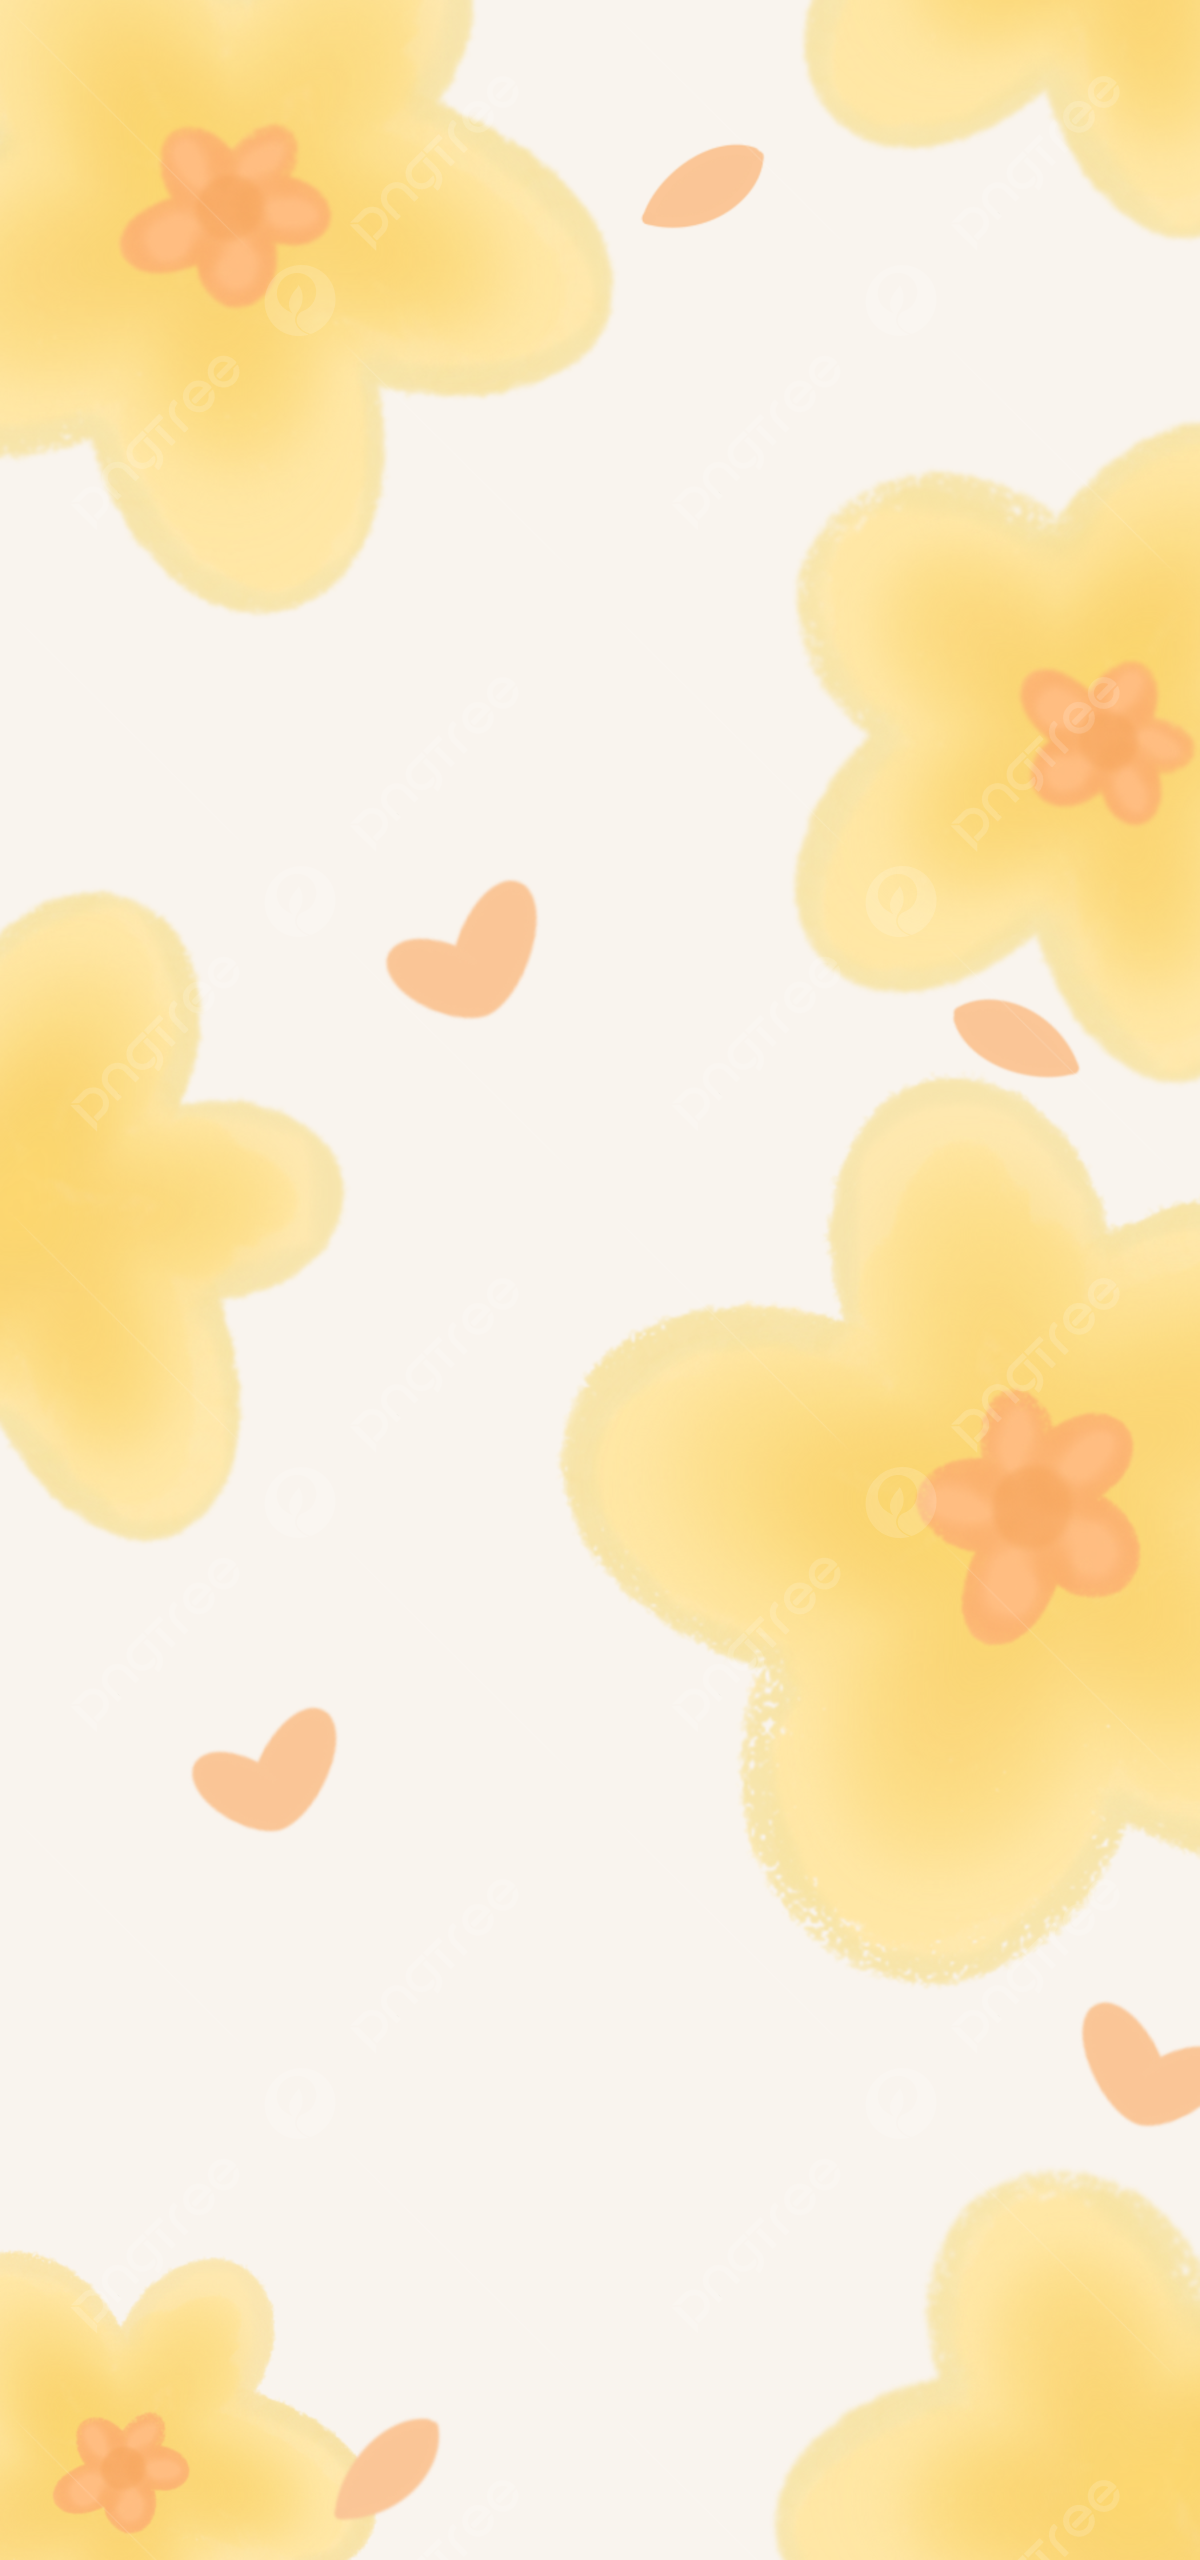  Farbige Kreise Hintergrundbild 1200x2560. Ästhetik Der Gelben Blumentapete Hintergrund Hintergrundbild zum kostenlosen Download